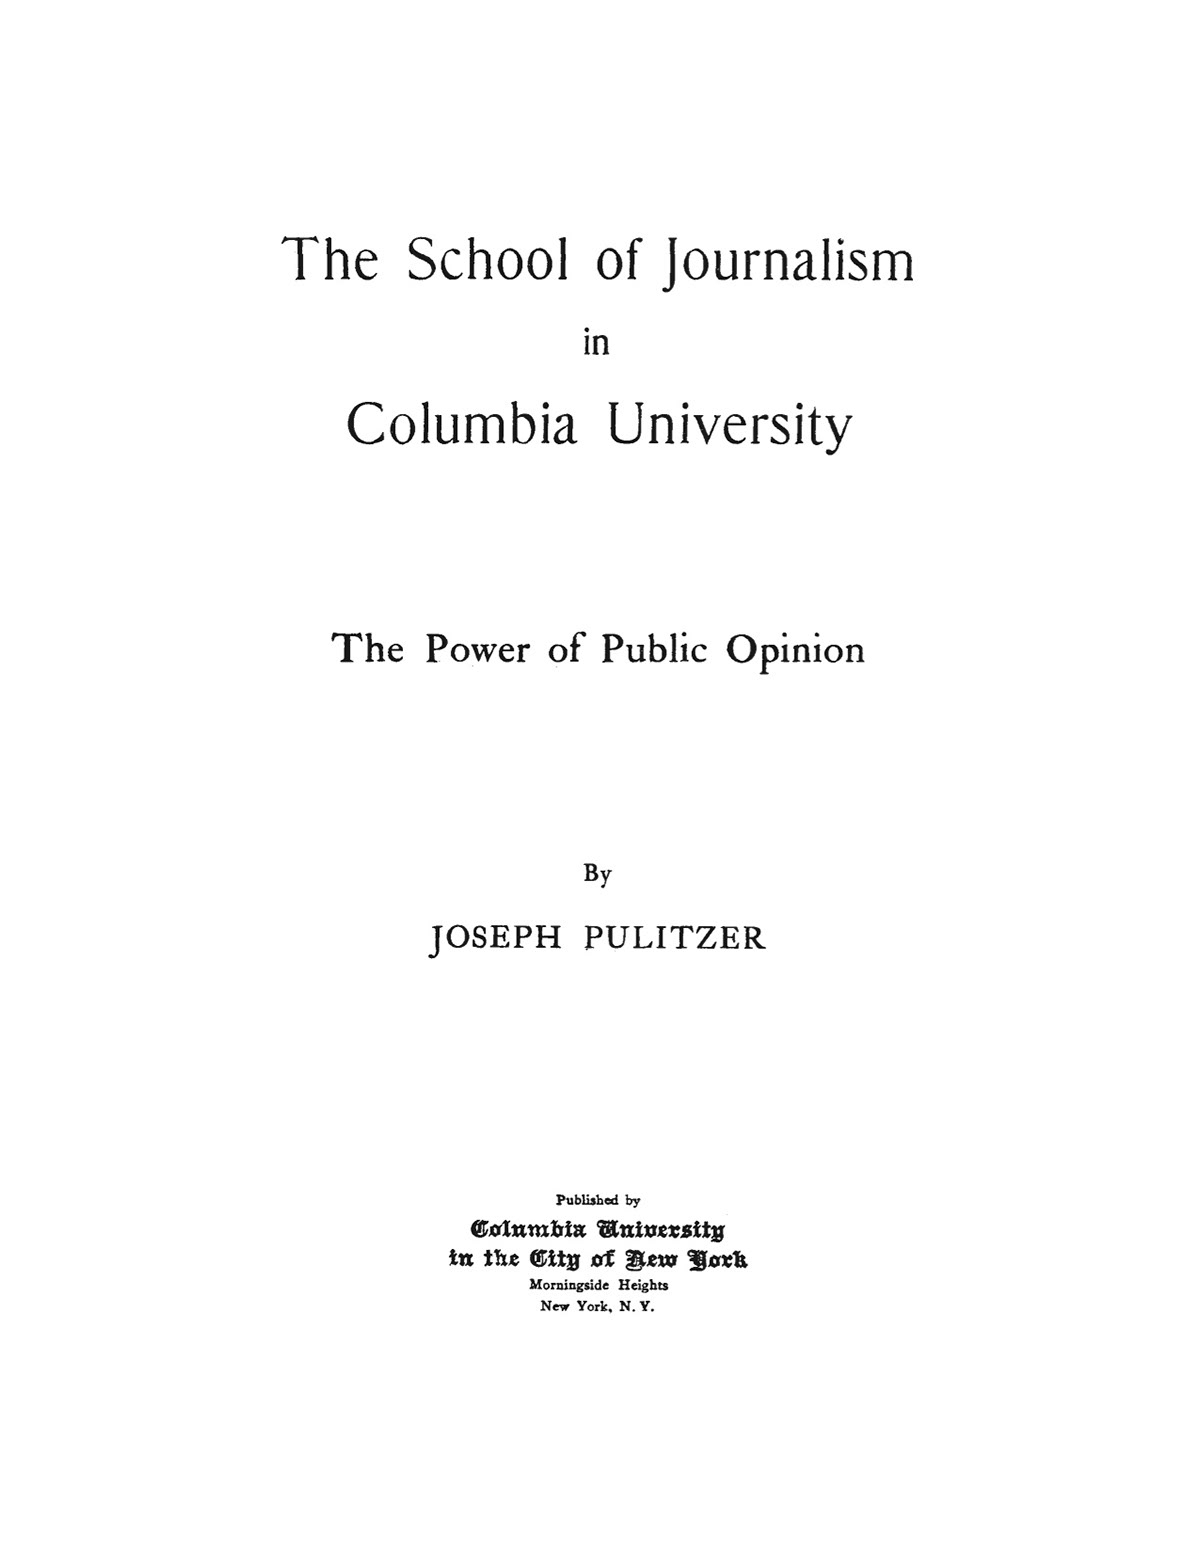 School of Journalism Joseph Pulitzer pulitzer prize Journalism Profession